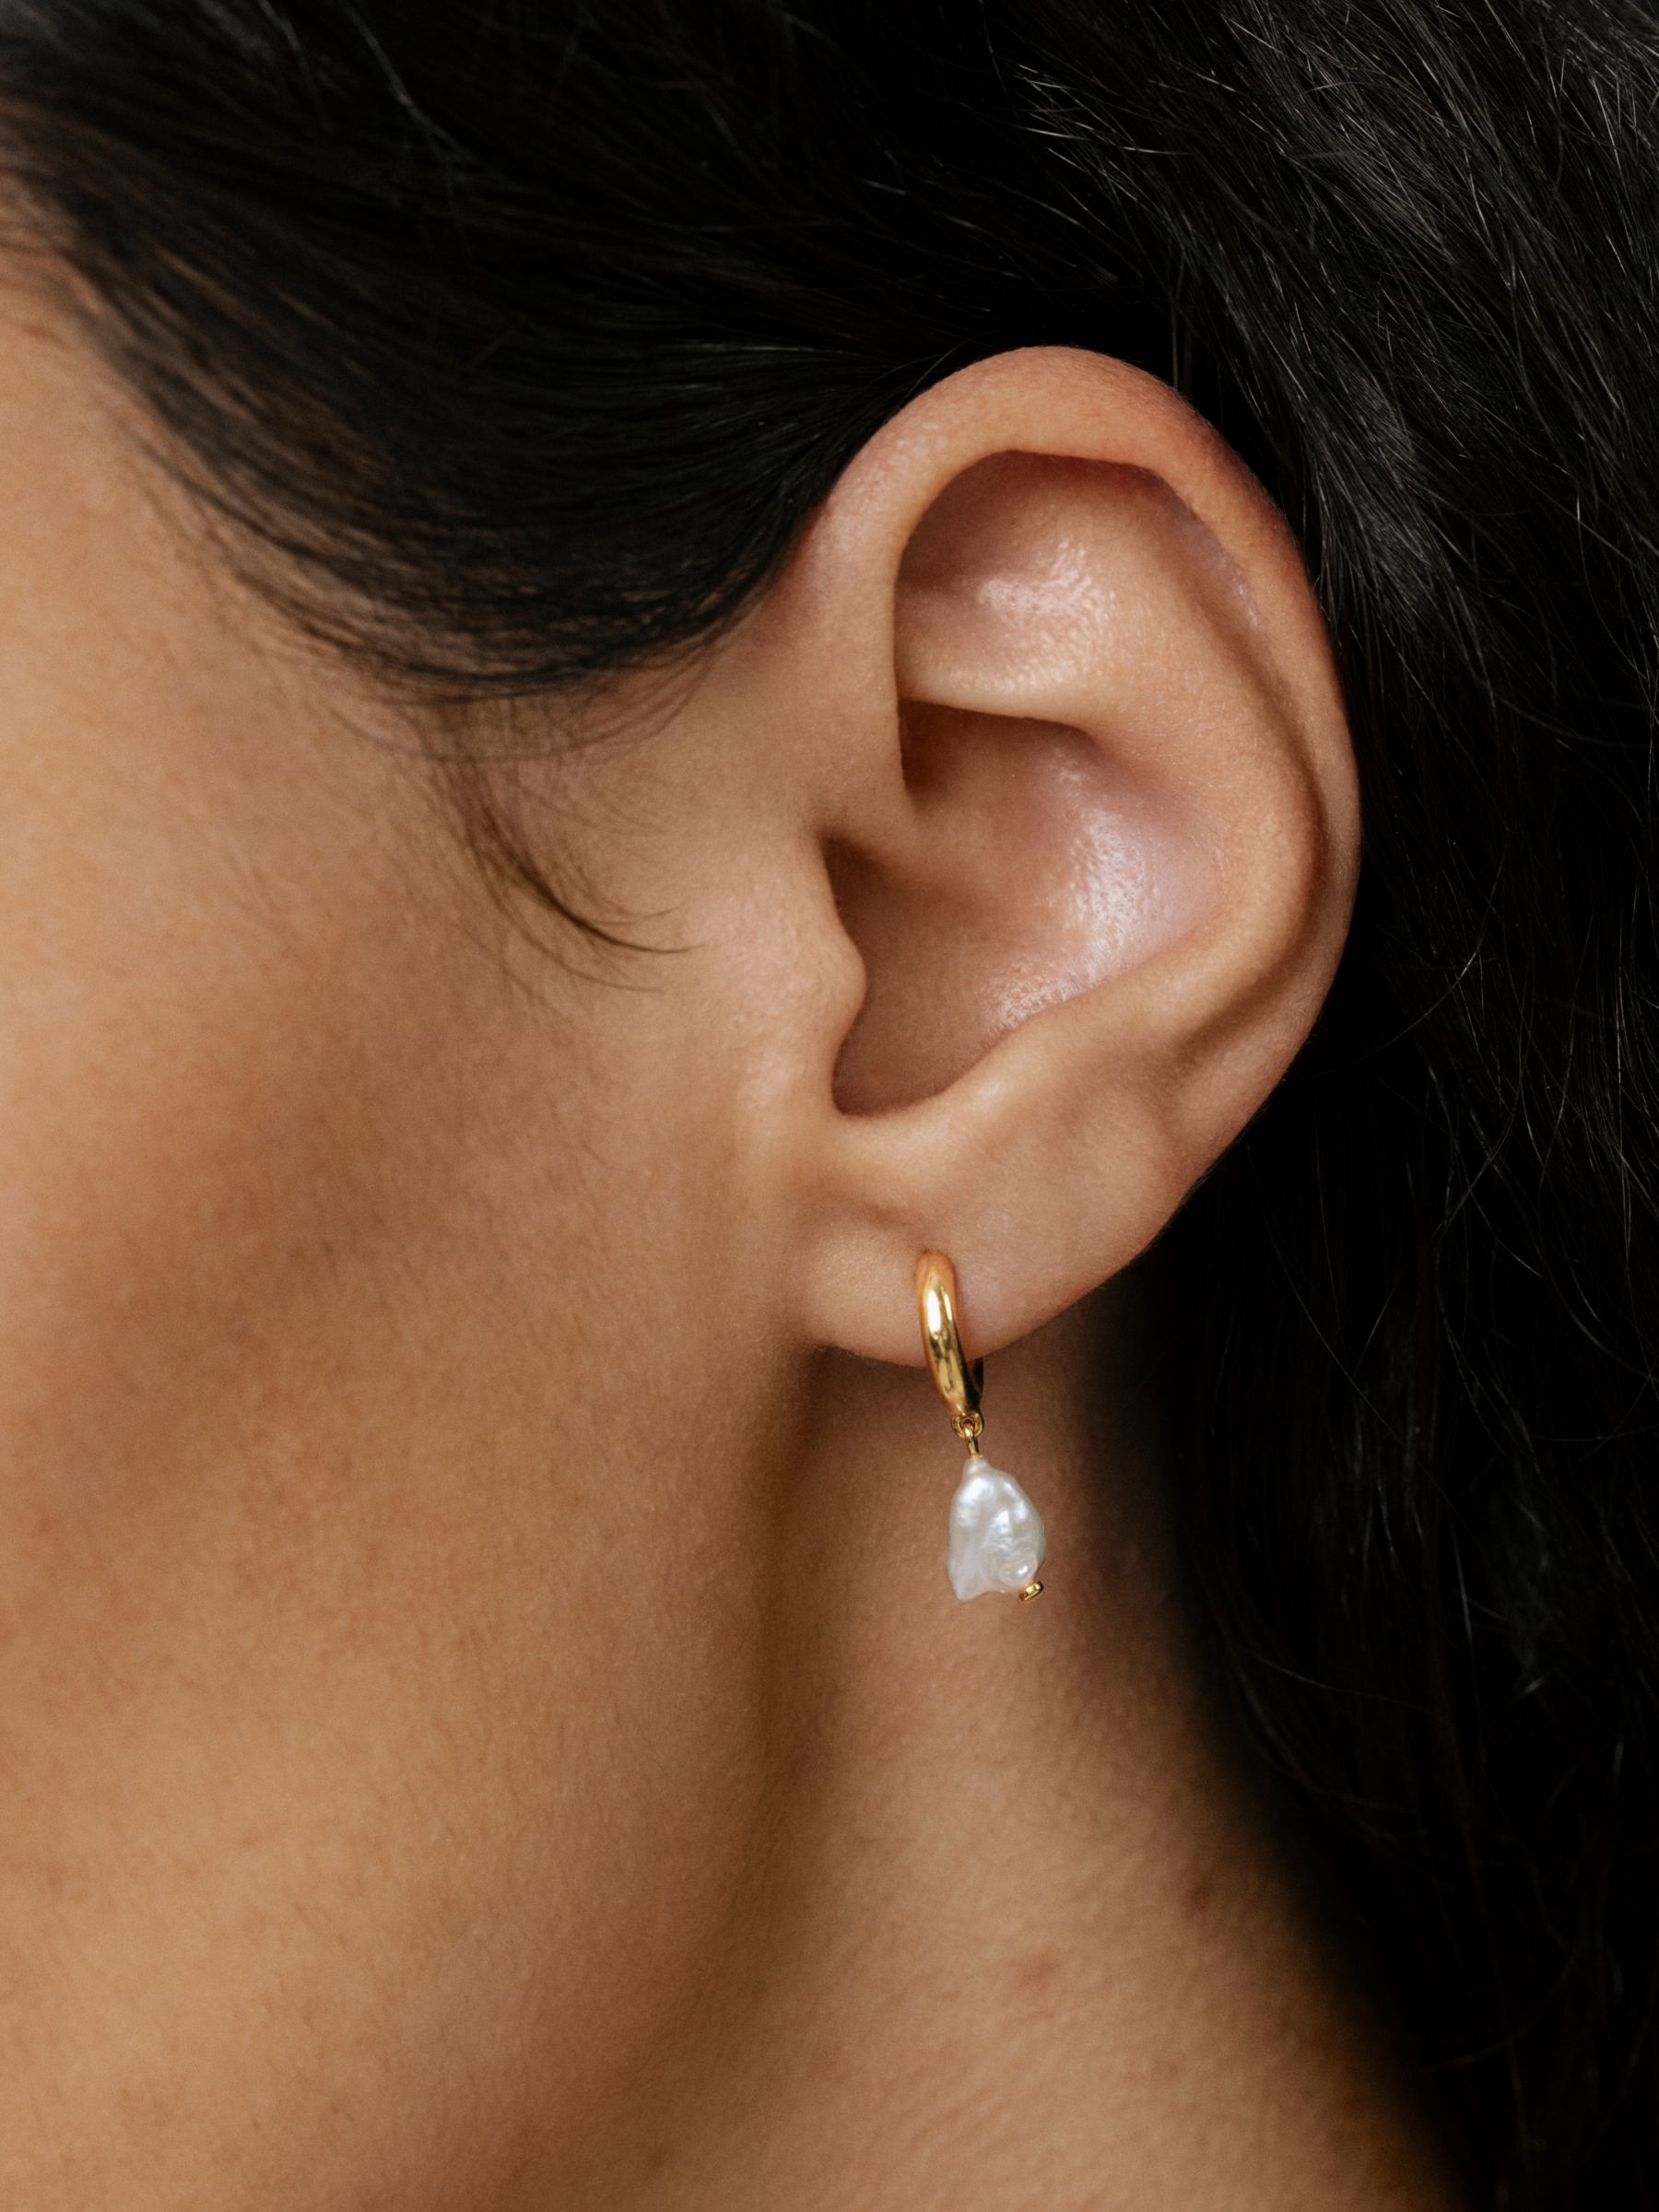 Buy Monica Vinader Nura Keshi Pearl Open Hoop Drop Earrings, Gold/White Online at johnlewis.com